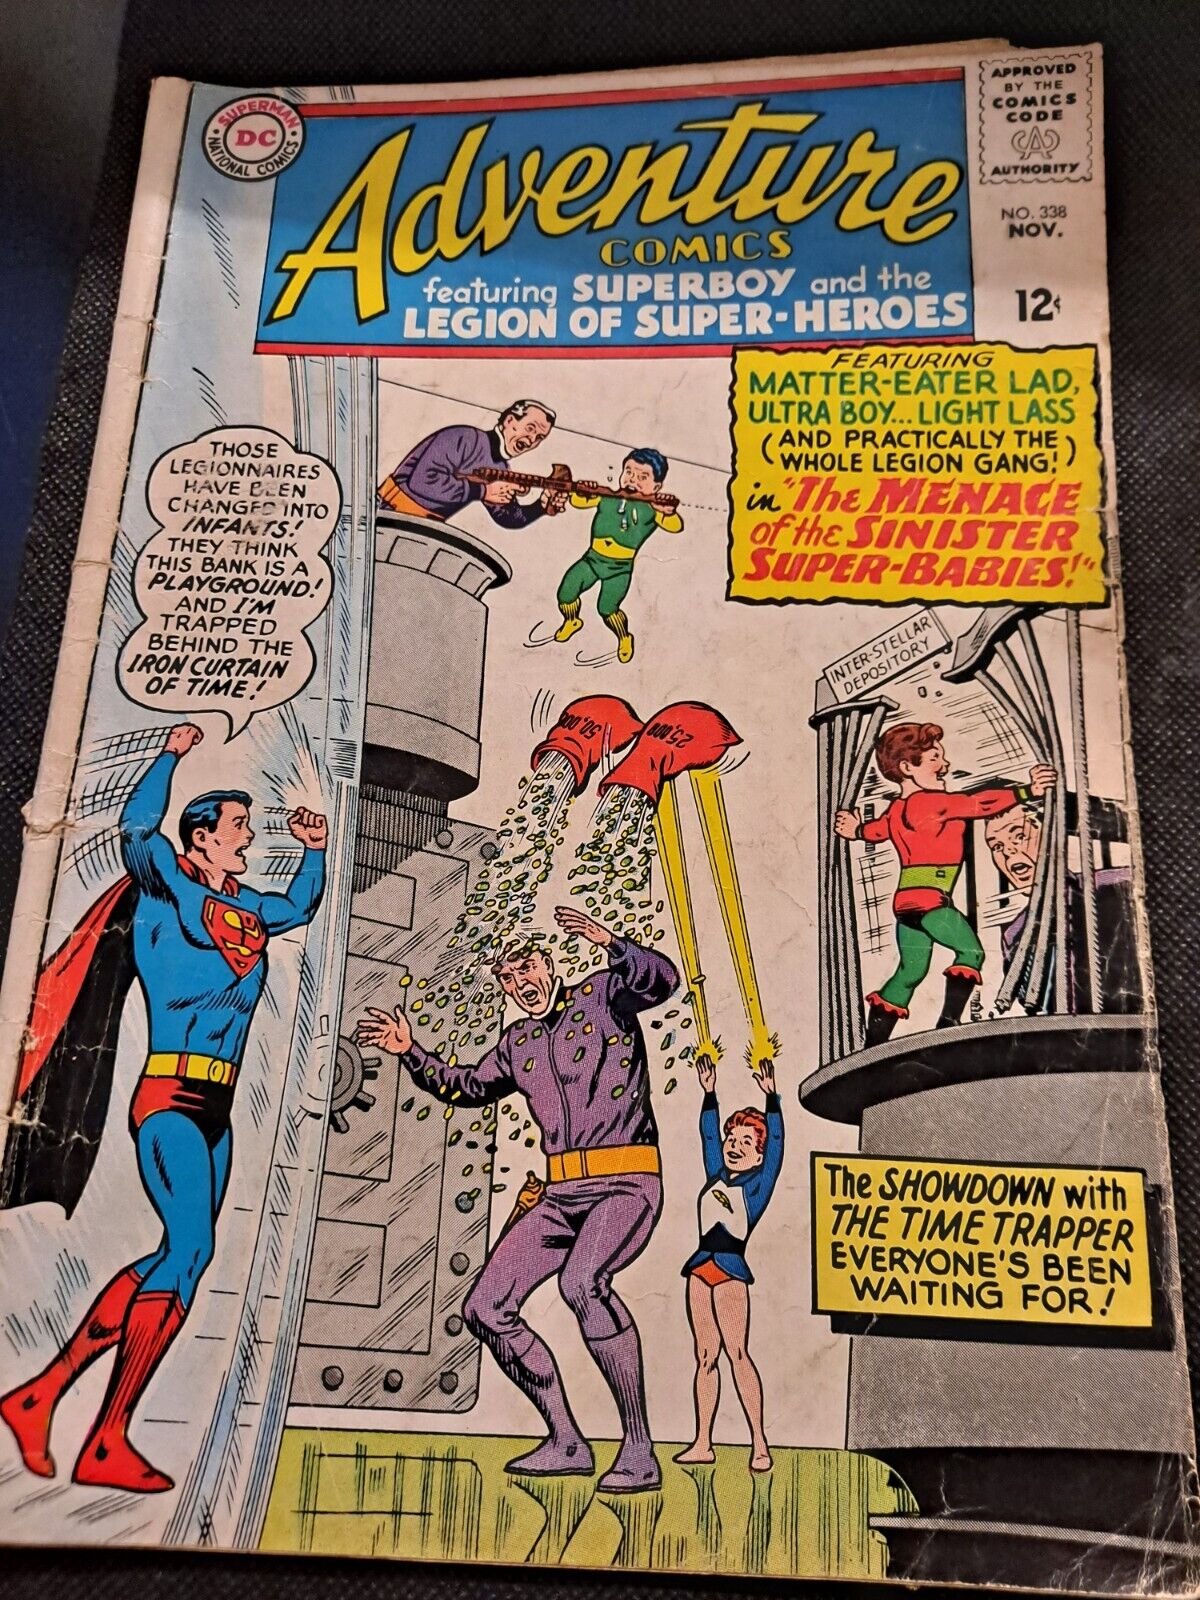 DC SUPERMAN NATIONAL COMICS NO. 338 NOV. ADVENTURE COMICS COMIC BOOK   e7352UXX